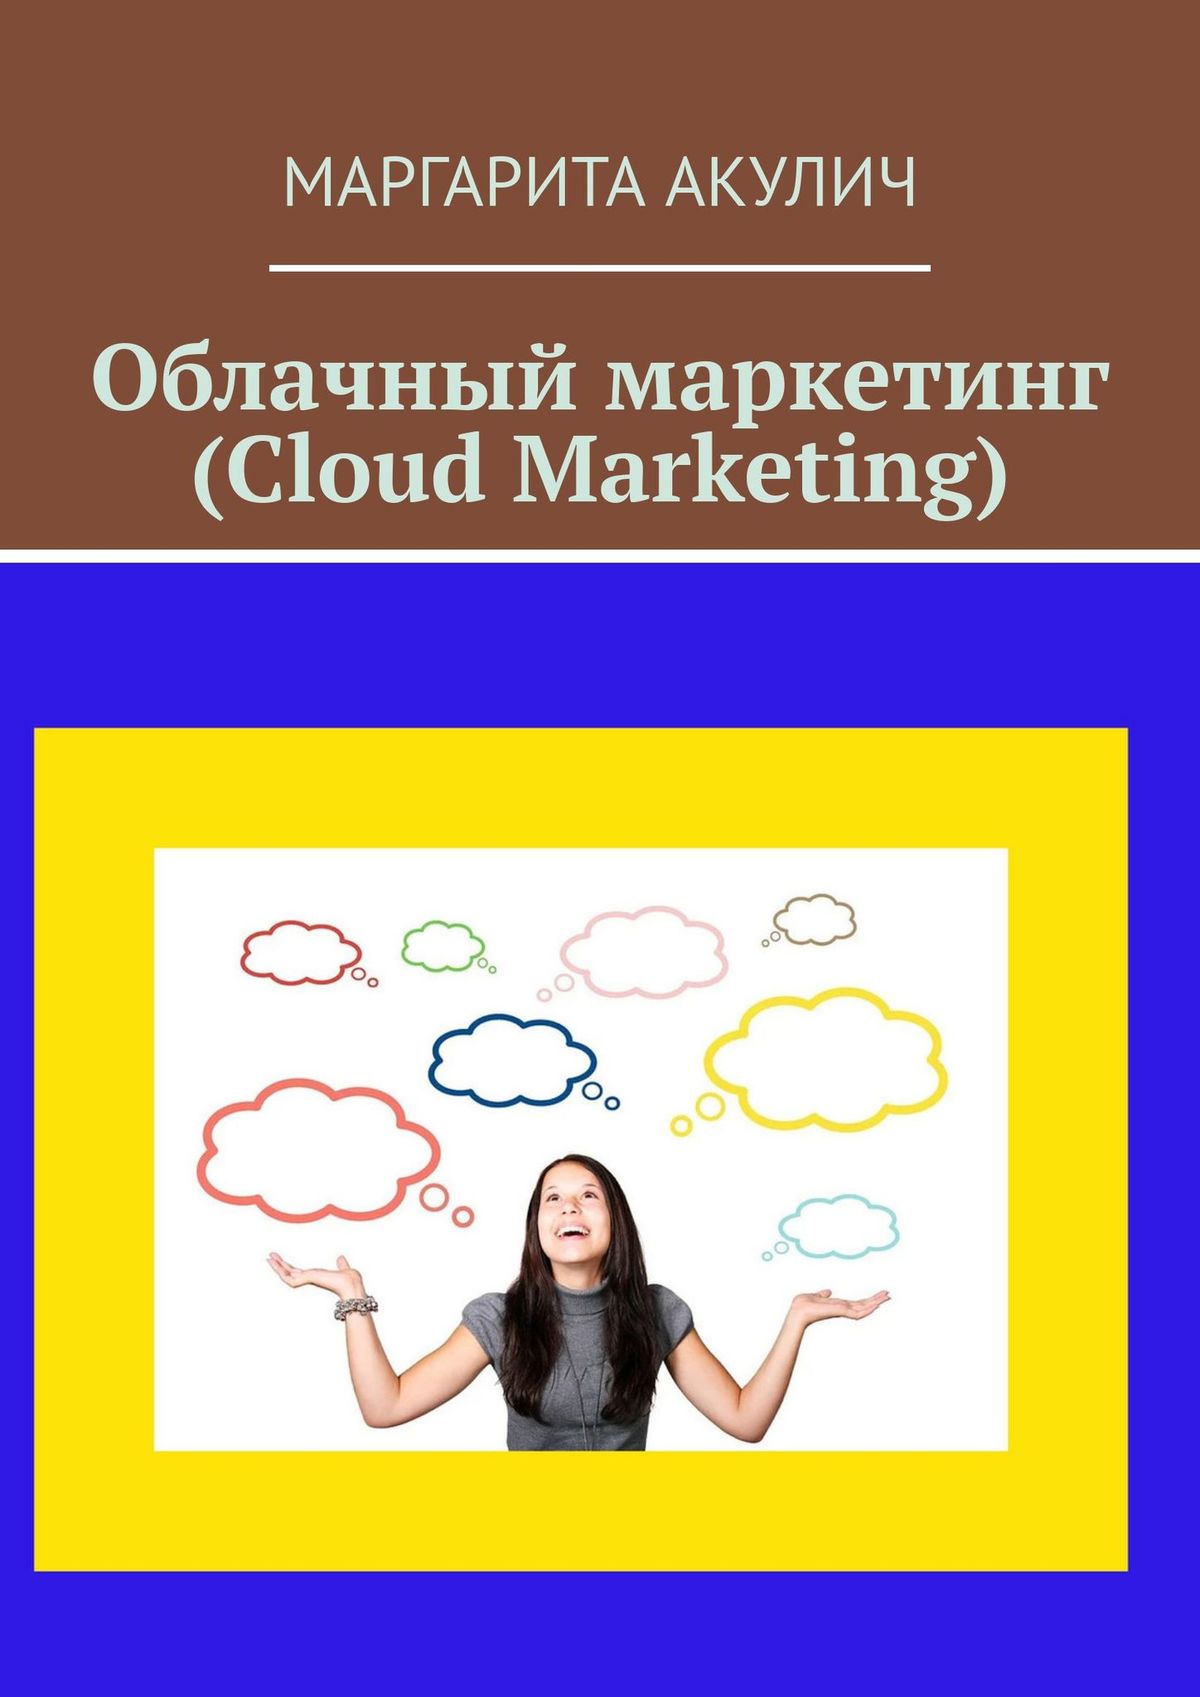 Книга Cloud Marketing (Облачный маркетинг) из серии , созданная Маргарита Акулич, может относится к жанру Прочая образовательная литература. Стоимость книги Cloud Marketing (Облачный маркетинг)  с идентификатором 29827609 составляет 120.00 руб.